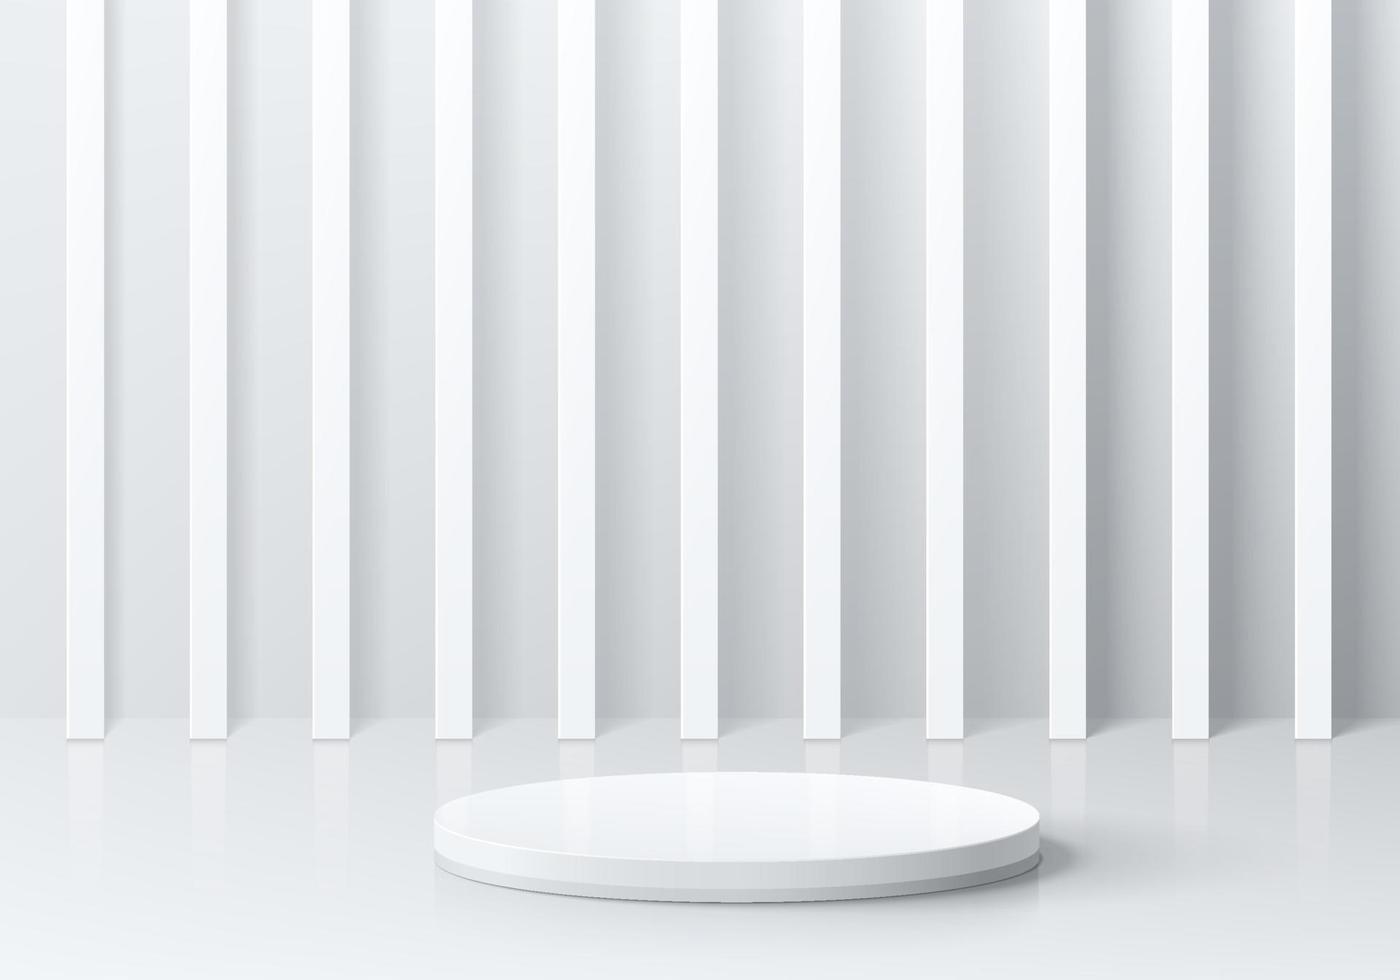 podio de pedestal de cilindro 3d blanco realista con pilar vertical en la pared. vector de fondo abstracto con formas geométricas. escena mínima de lujo para exhibición de productos de maqueta, exhibición de promoción.